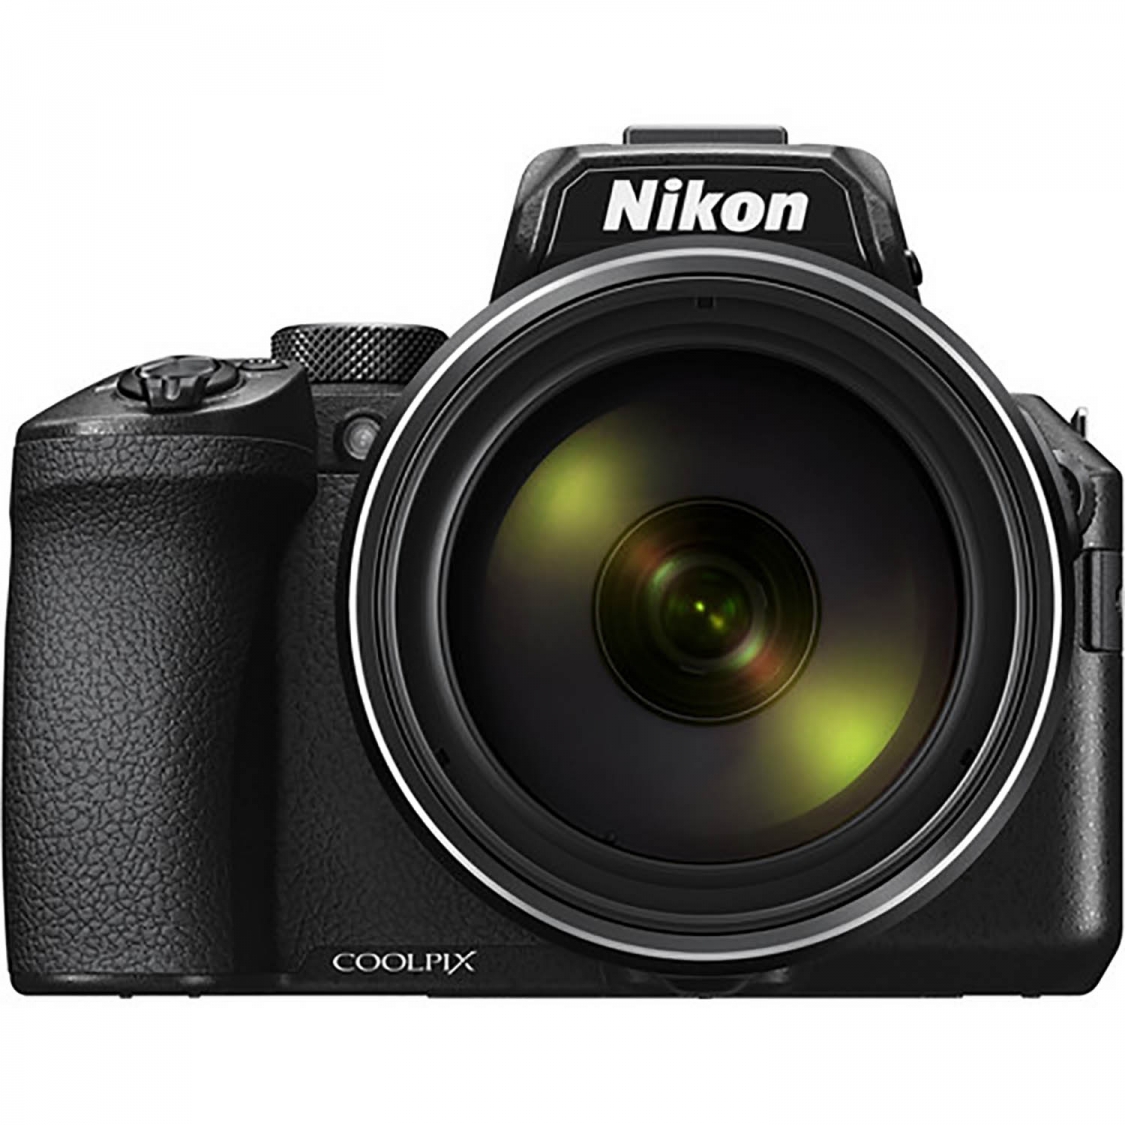 Nikon Coolpix P950 Compact Camera (black)